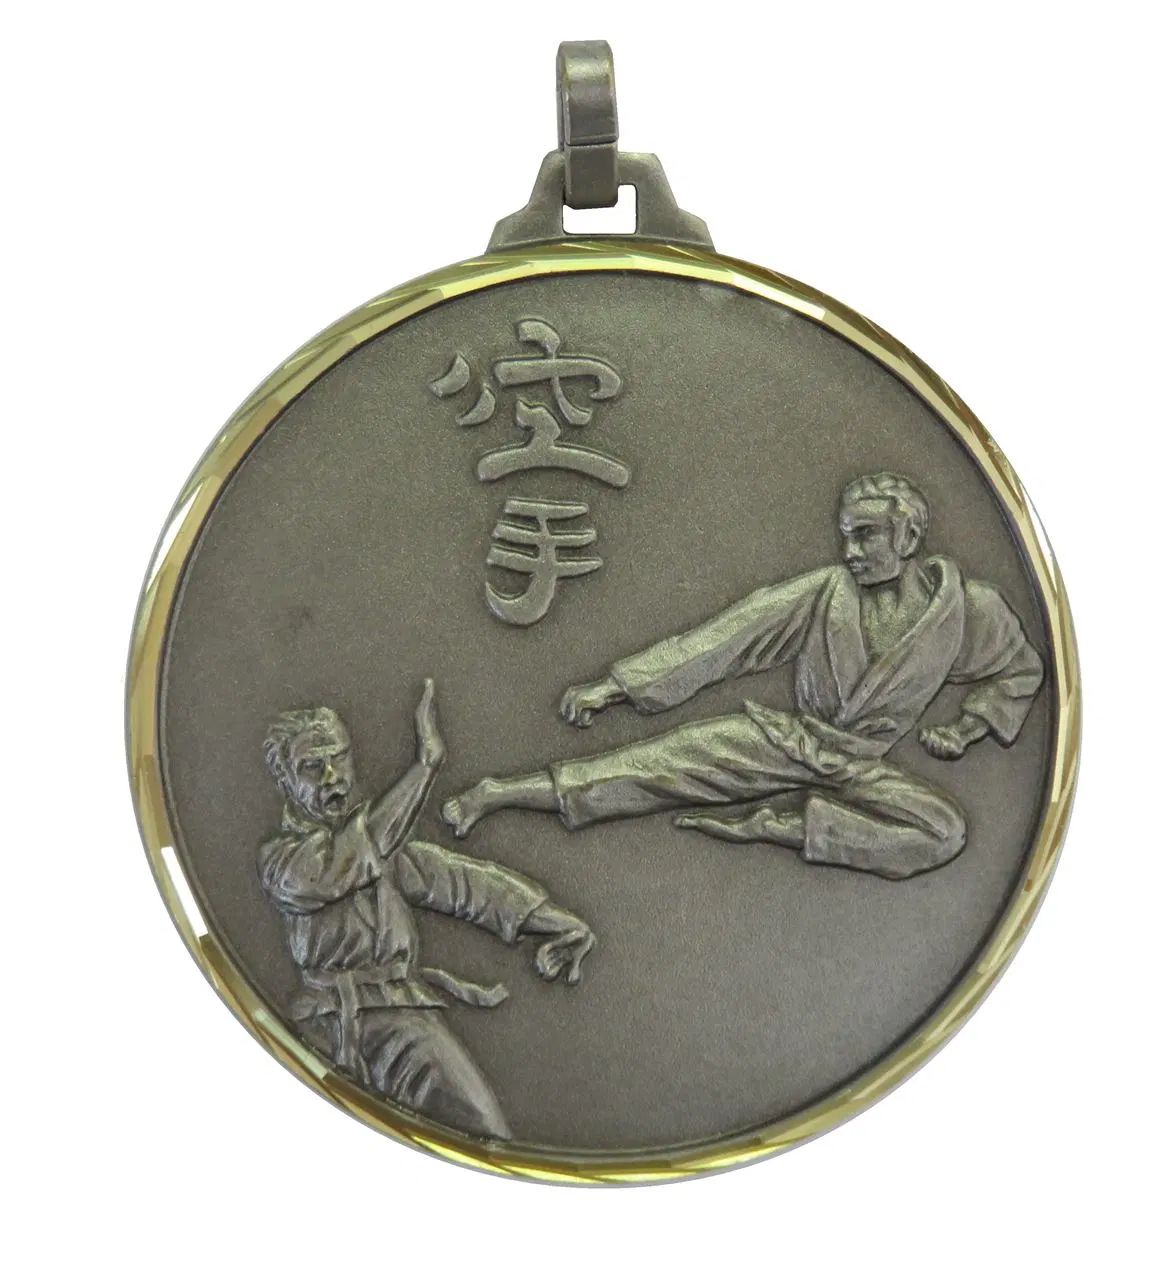 Custom Karate deportivo barato al por mayor de medalla medallas de metal con cinta de la medalla de Karate